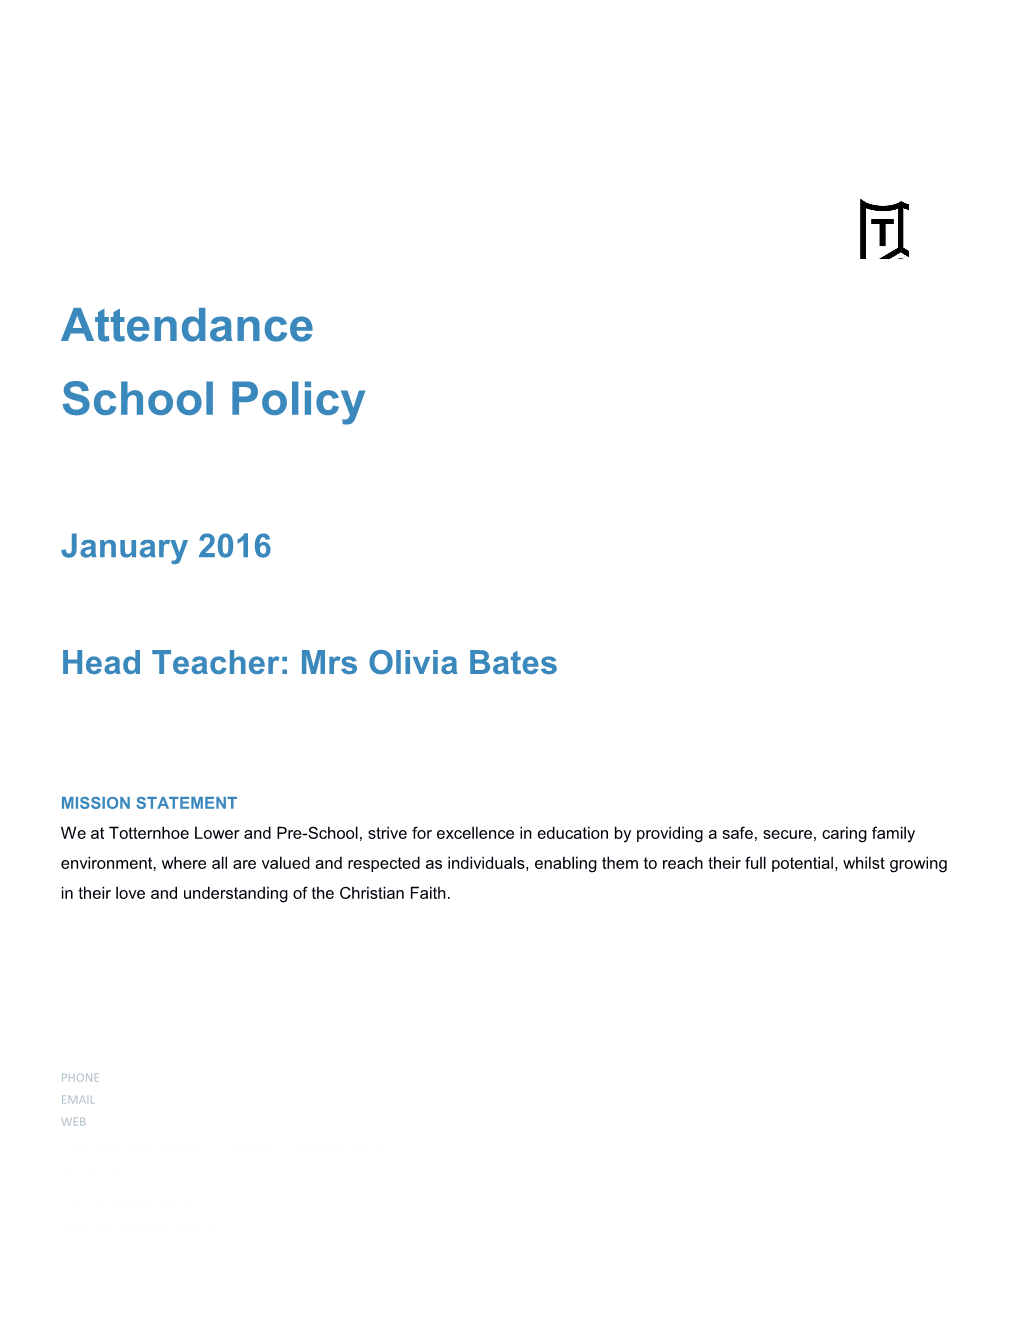 Head Teacher: Mrs Olivia Bates